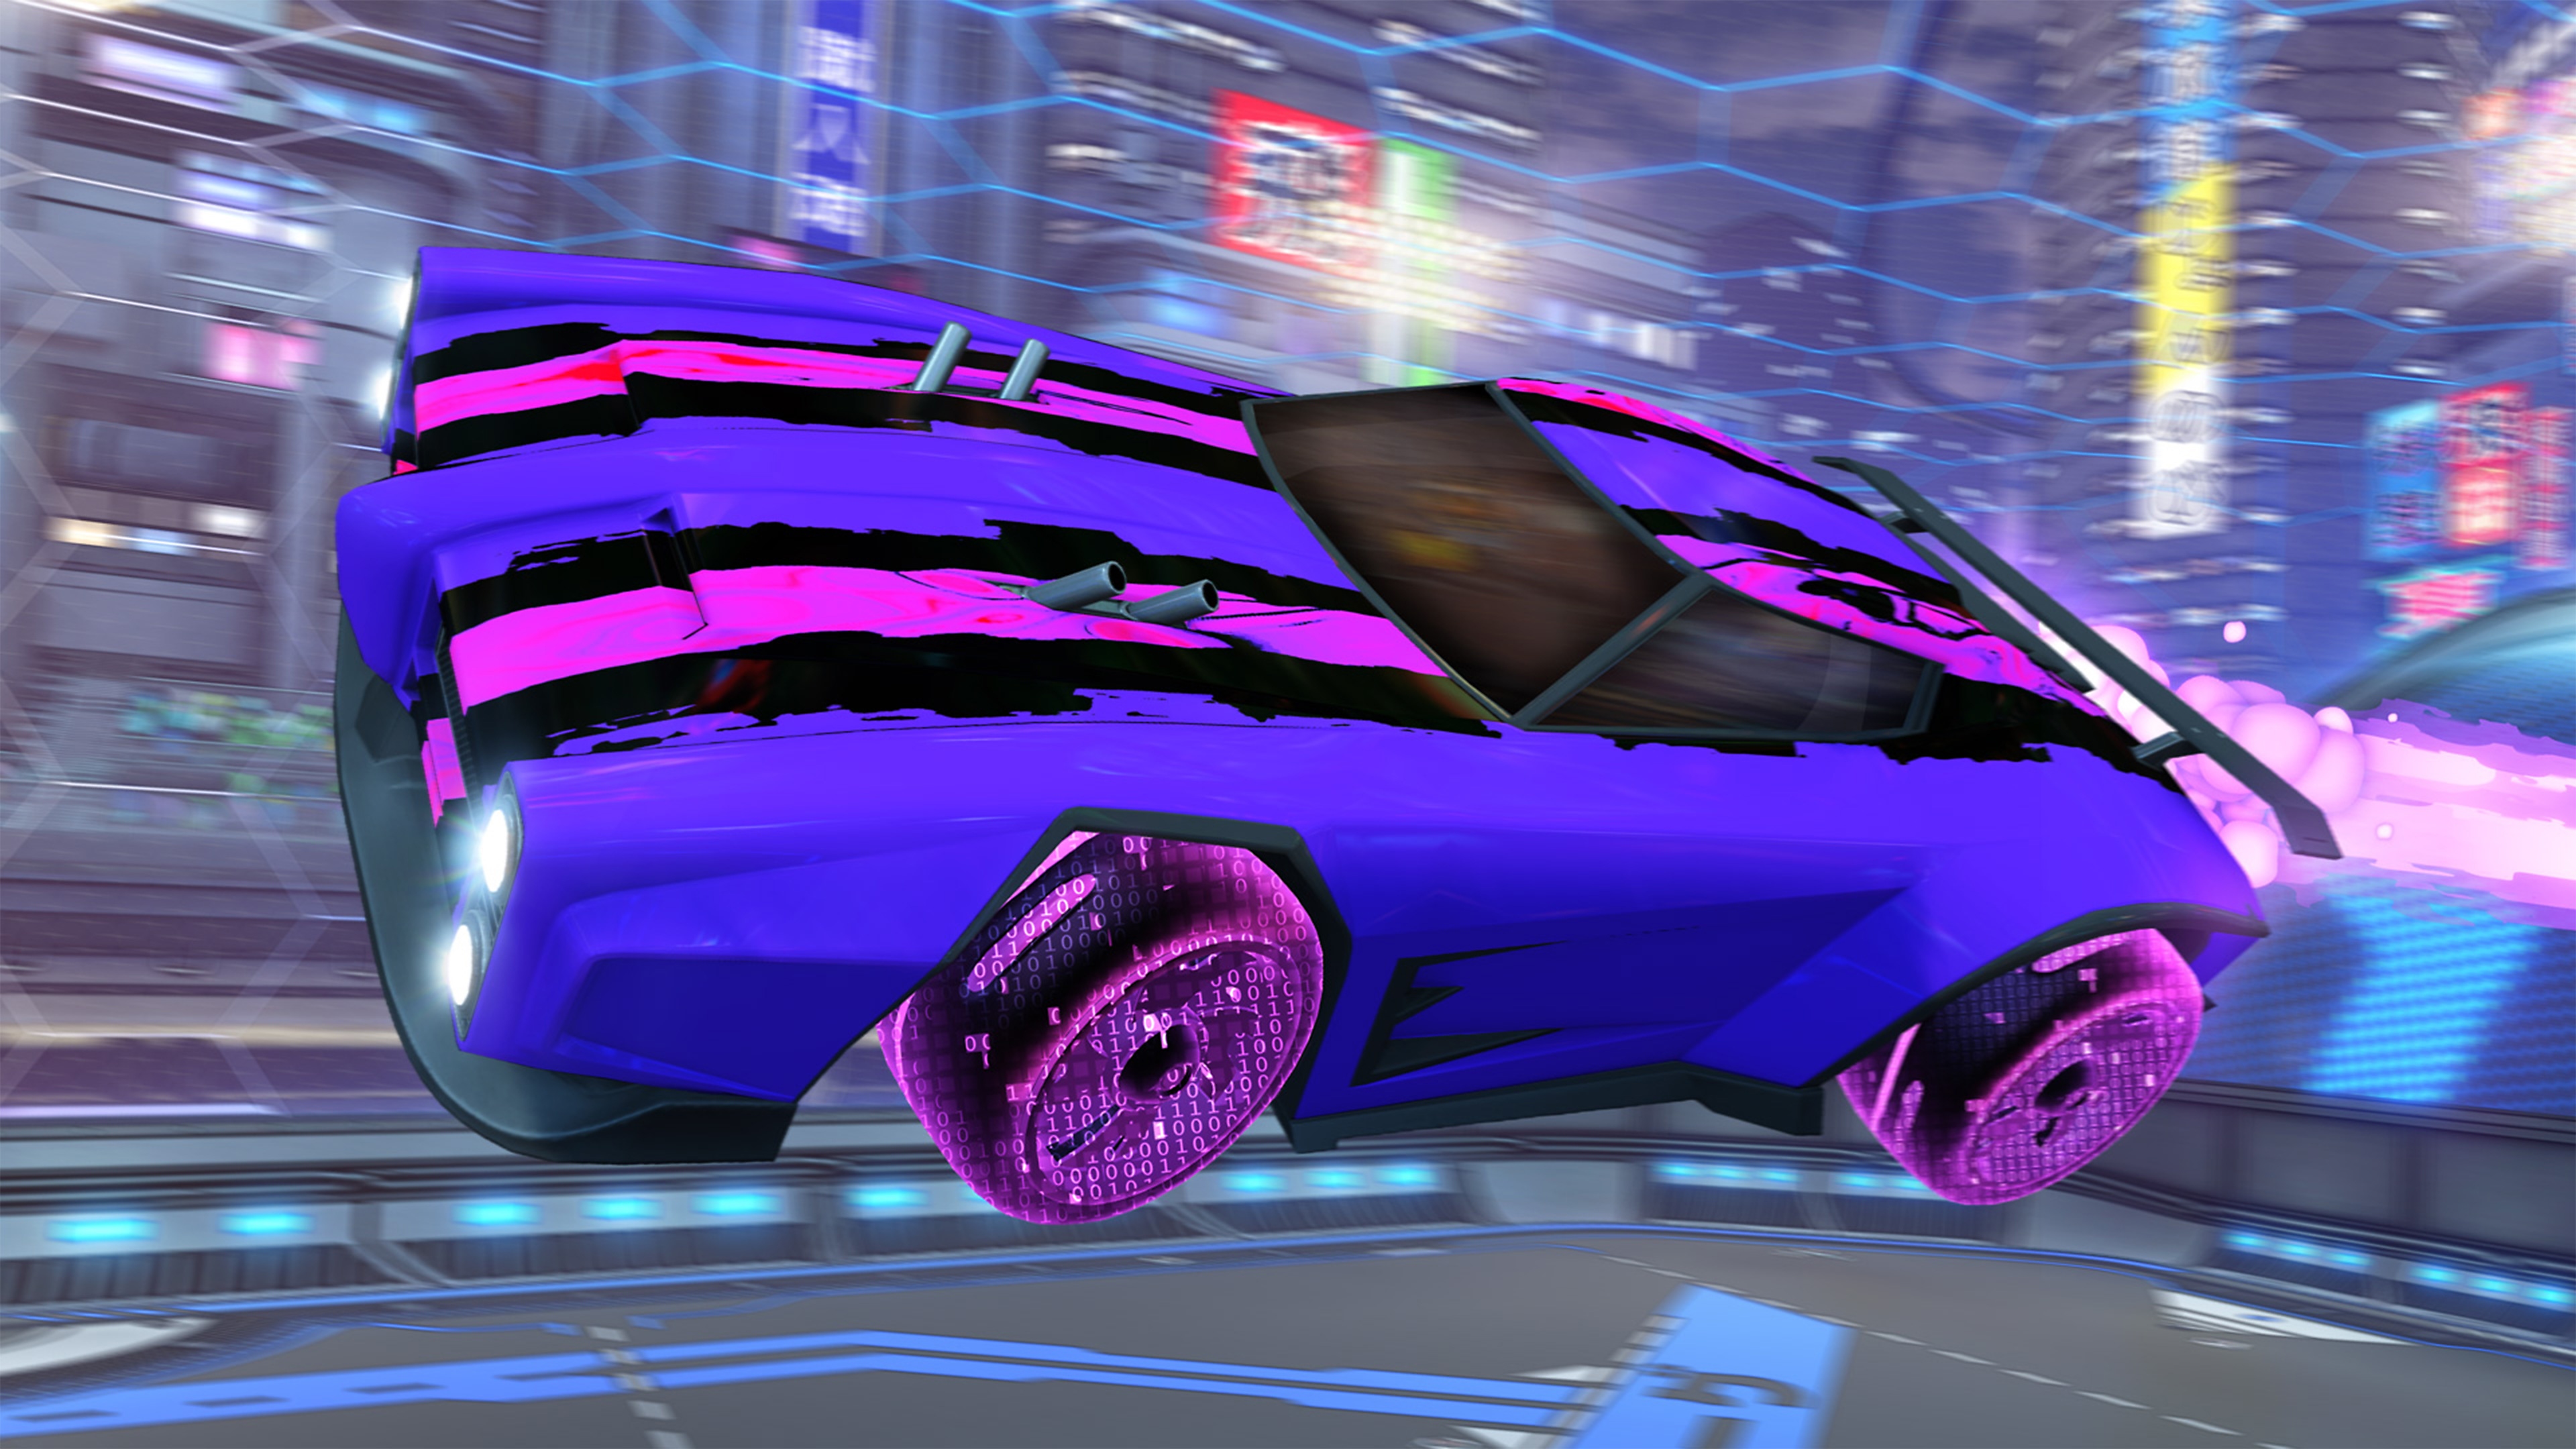 Rocket League snimak ekrana koji prikazuje ljubičasti automobil sa roze i crnim trkačkim trakama